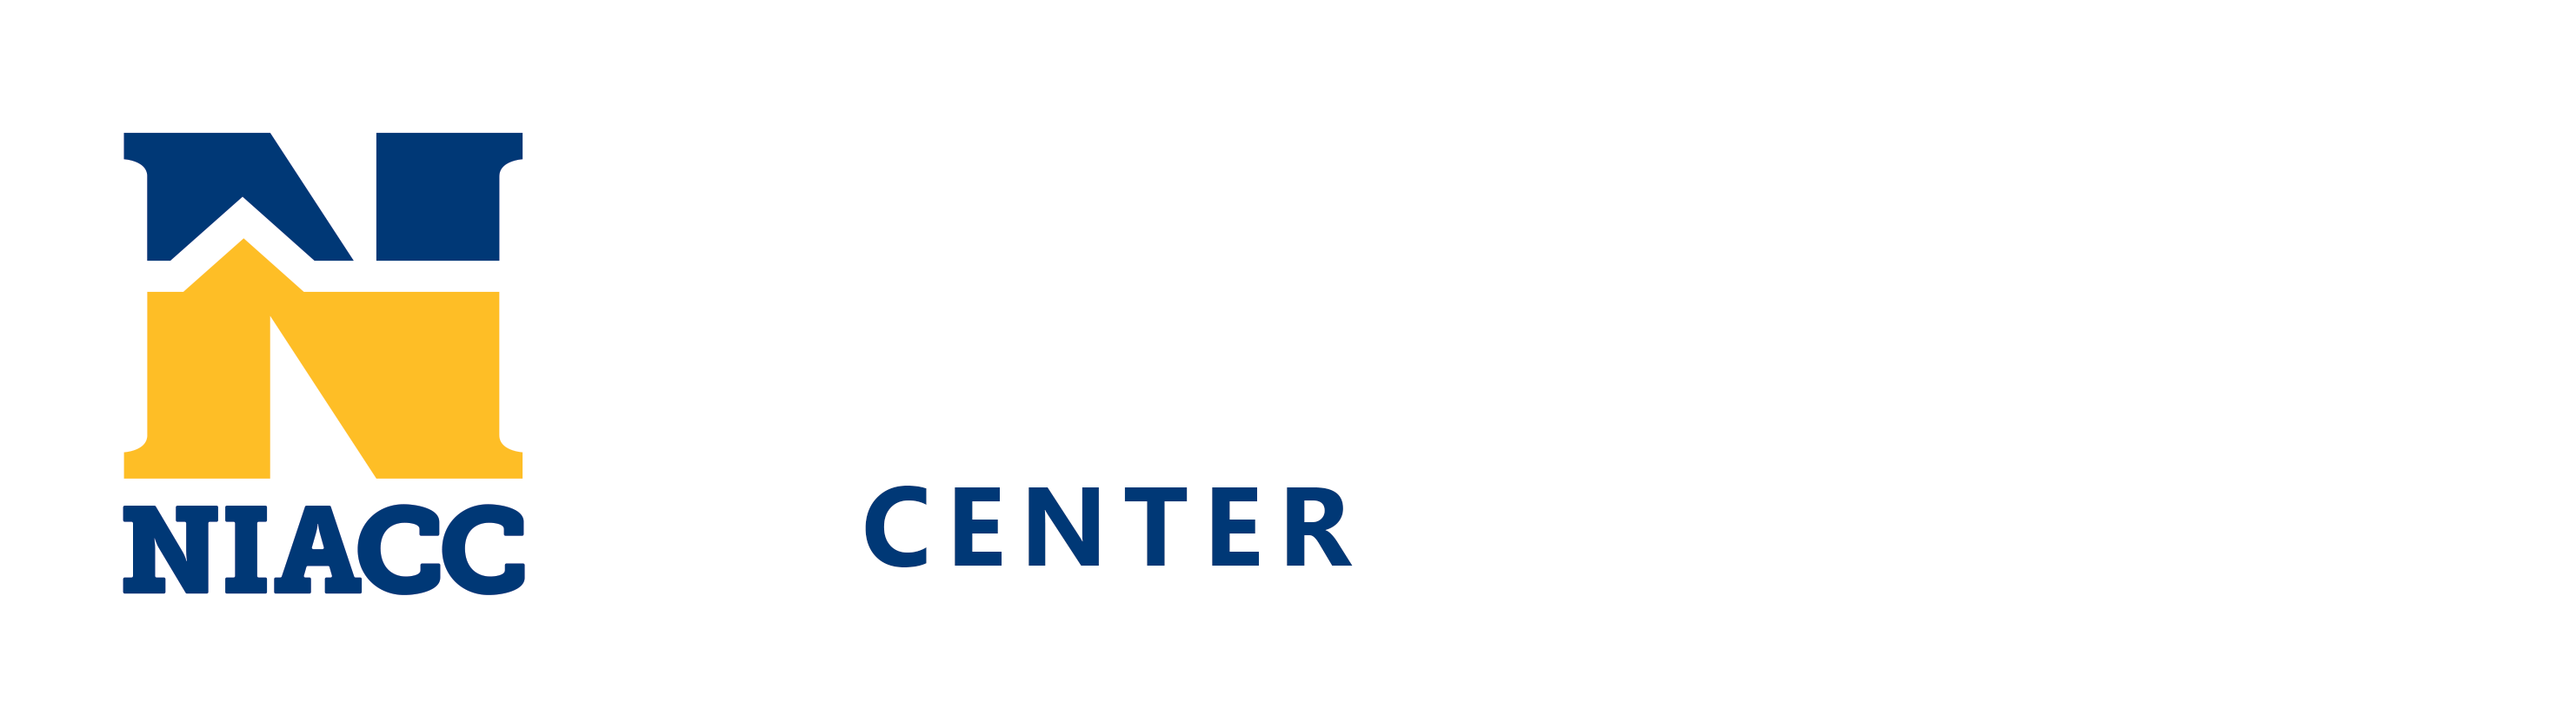 帕帕约翰创业中心